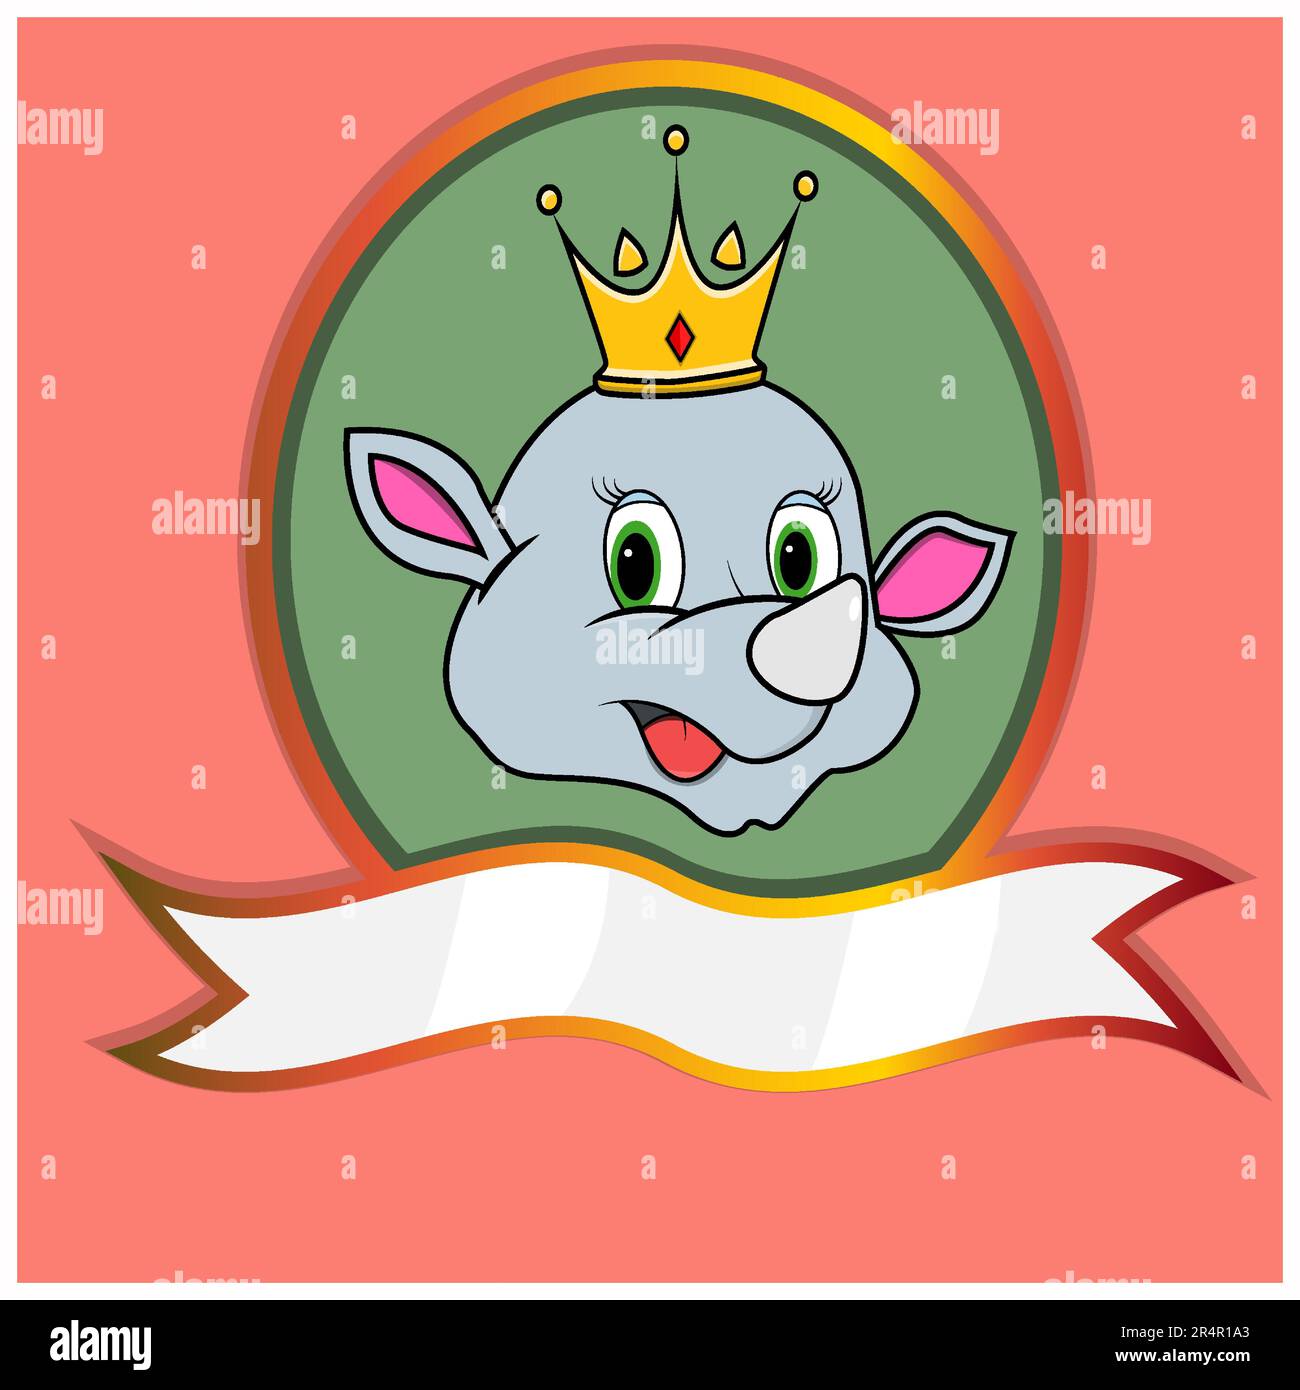 Jolie tête d'animal avec couronne sur l'étiquette de cadre. Tête Rhino. Idéal pour le dessin animé, le logo, les icônes et les personnages. Vecteur et illustration. Illustration de Vecteur